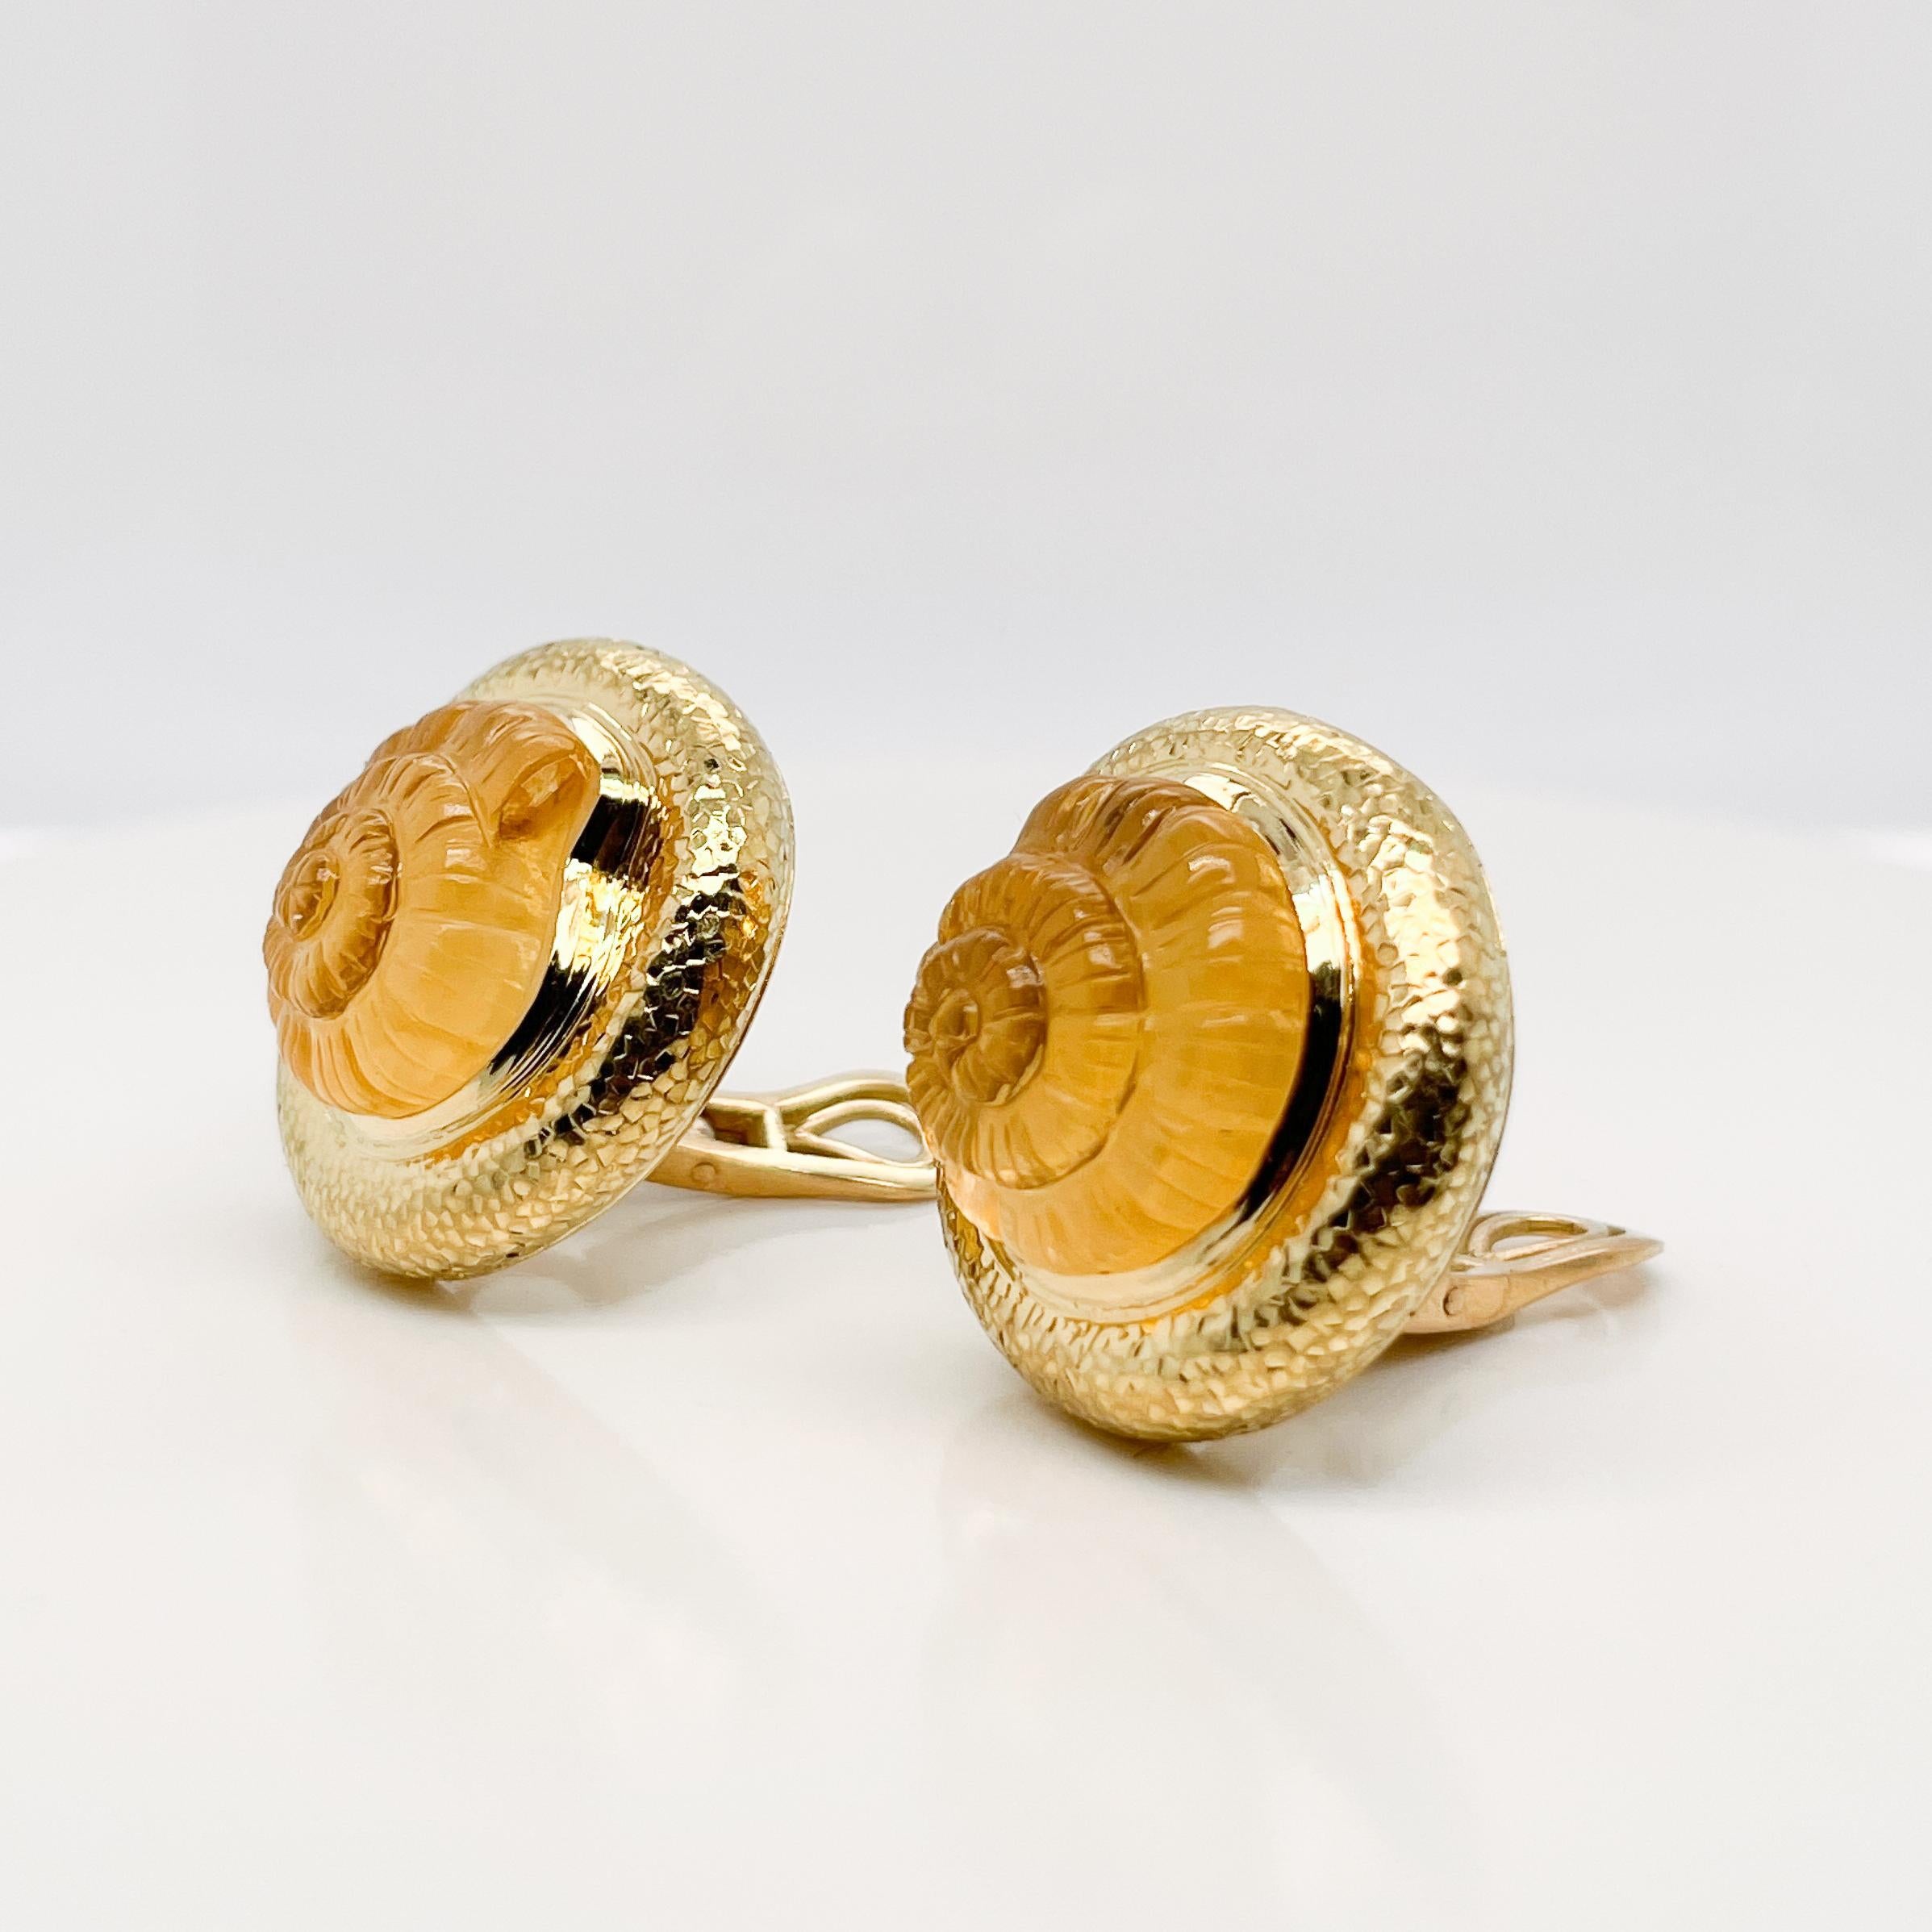 Ein sehr schönes Paar Nautilus-Ohrringe von Elizabeth Gage.

Jeweils mit einem geschnitzten Citrin-Nautilus, der auf einer Perlmuttscheibe sitzt und in gehämmertem 18-karätigem Gold eingefasst ist.

Einfach ein tolles Paar Ohrclips von einem der